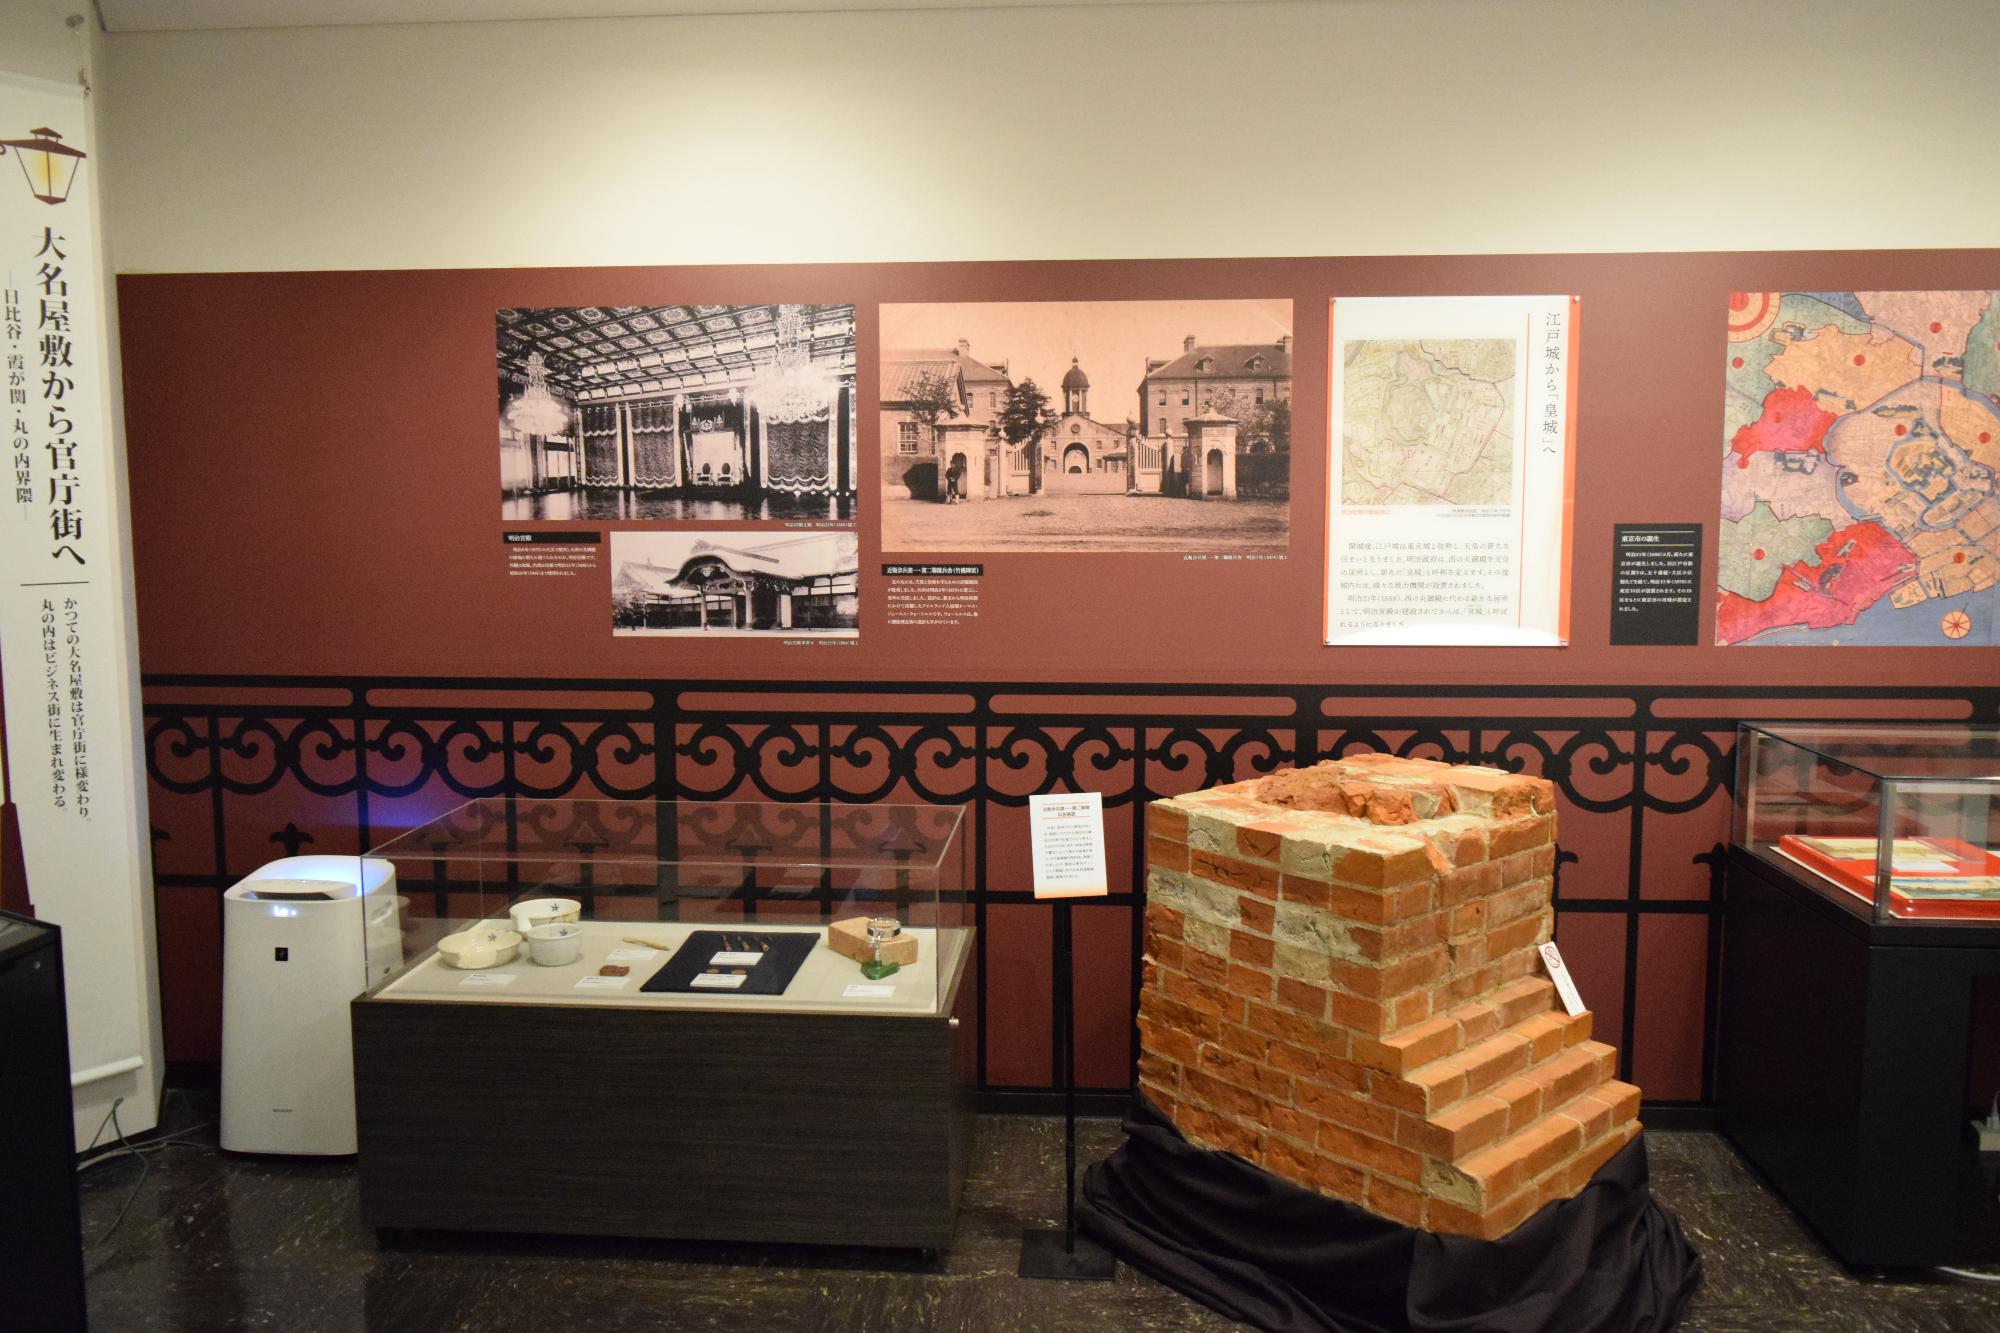 壁に建物の白黒写真や地図が貼られ、ガラスケースの中に展示された資料、出土した煉瓦が展示されている写真